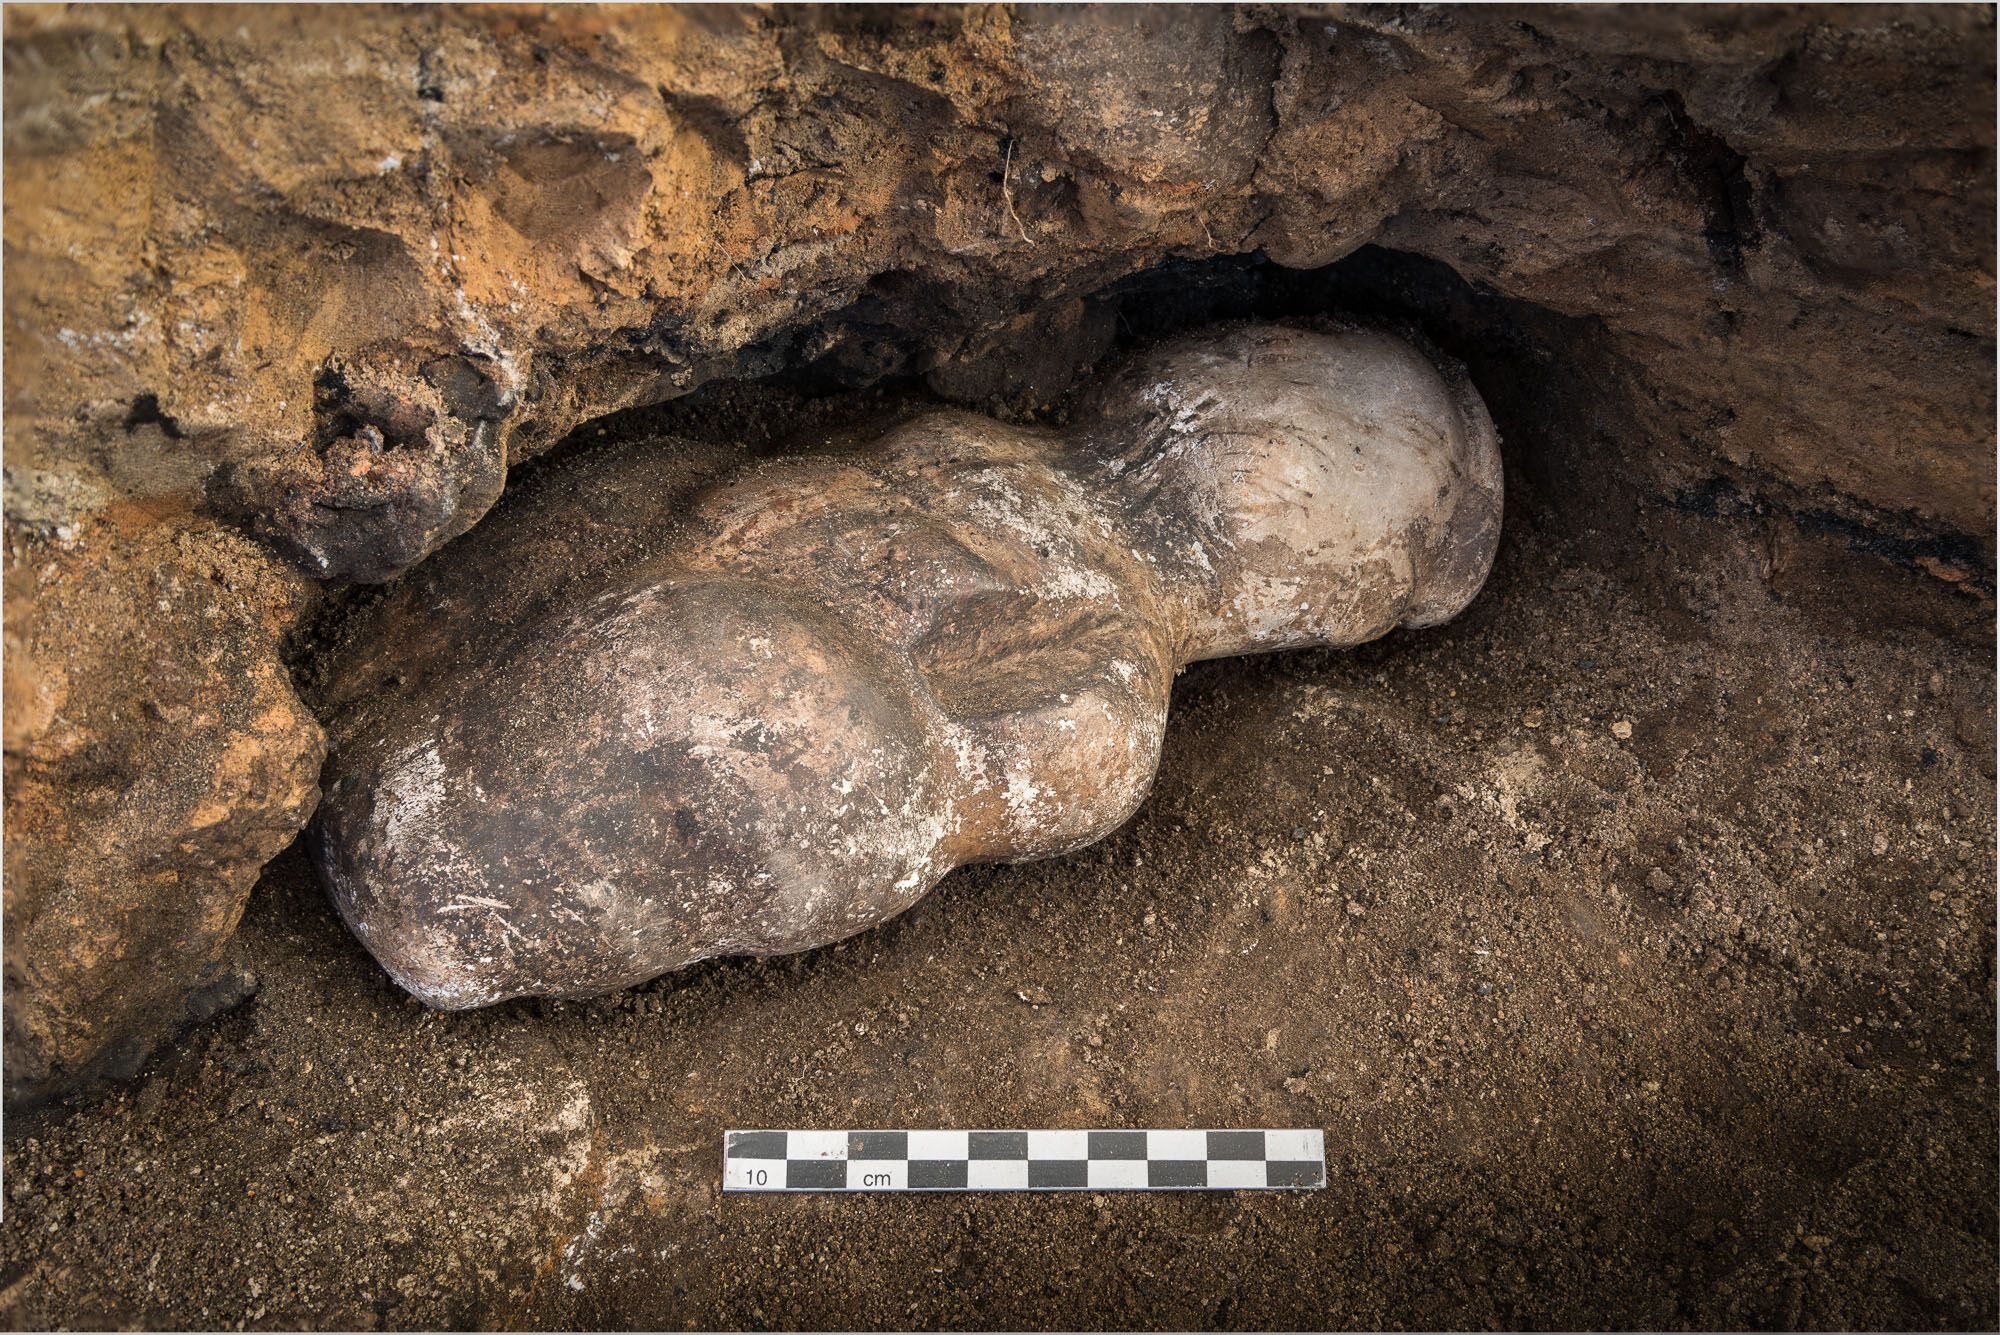 Kamienna figurka odkryta w masowym grobie